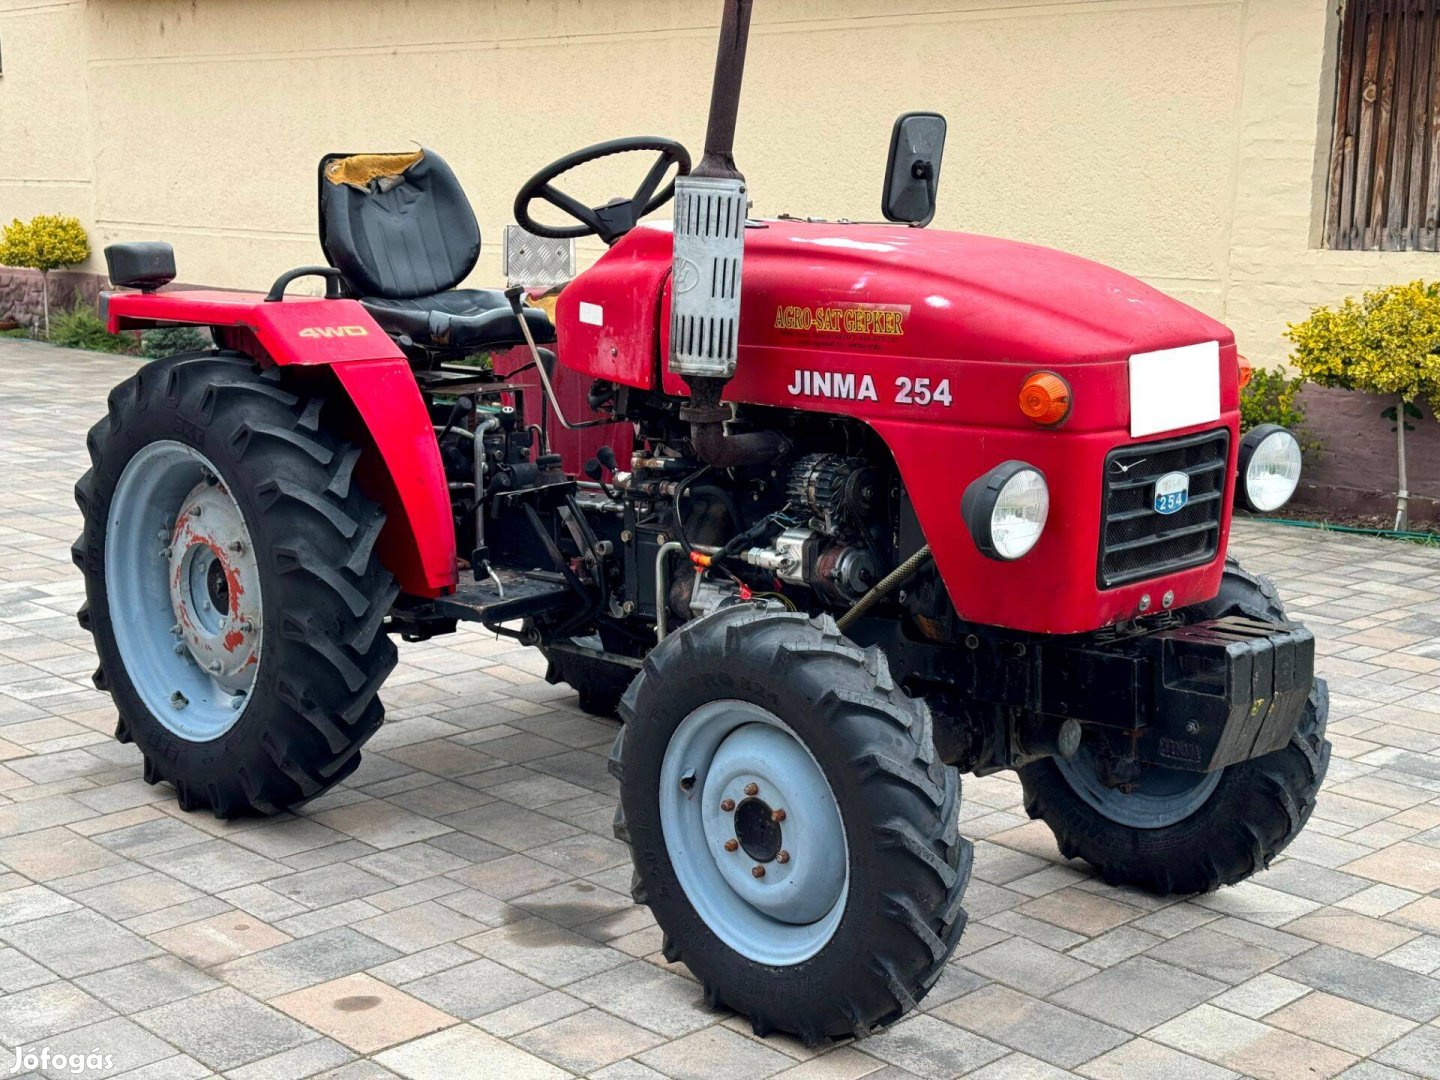 Jinma 254 - 4 WD kertészeti traktor